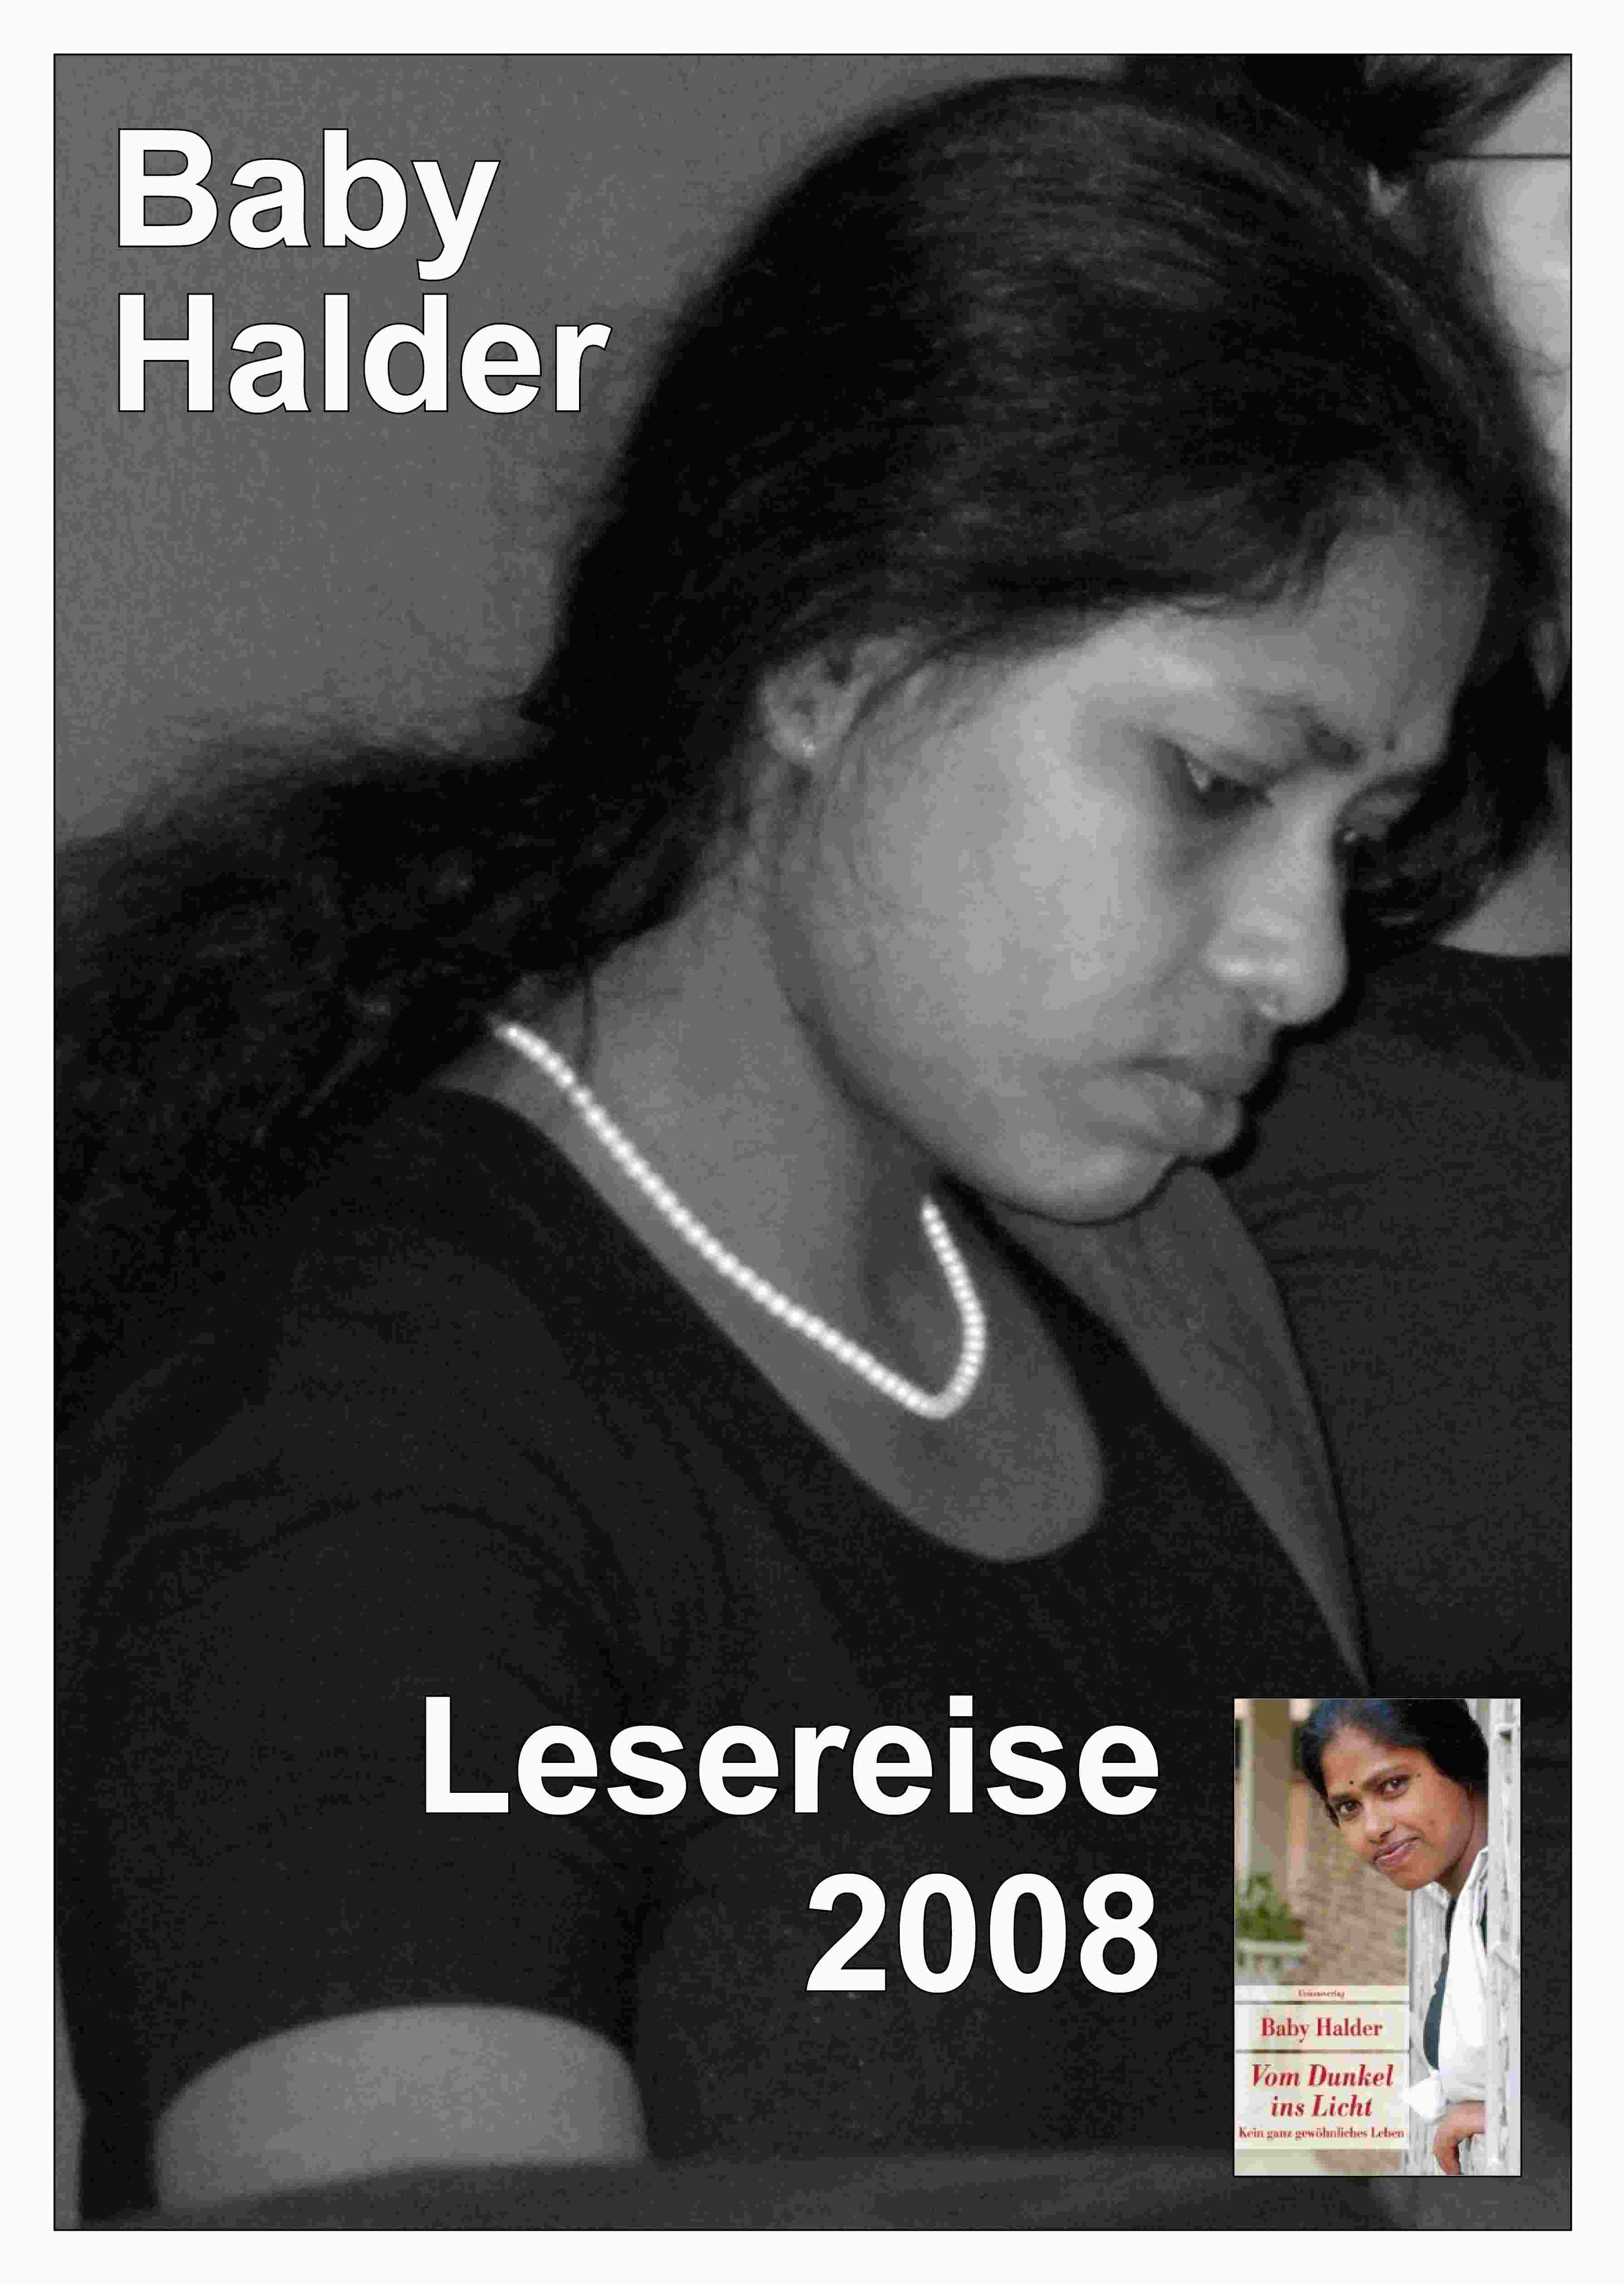 Lesereise Baby Halder 2008